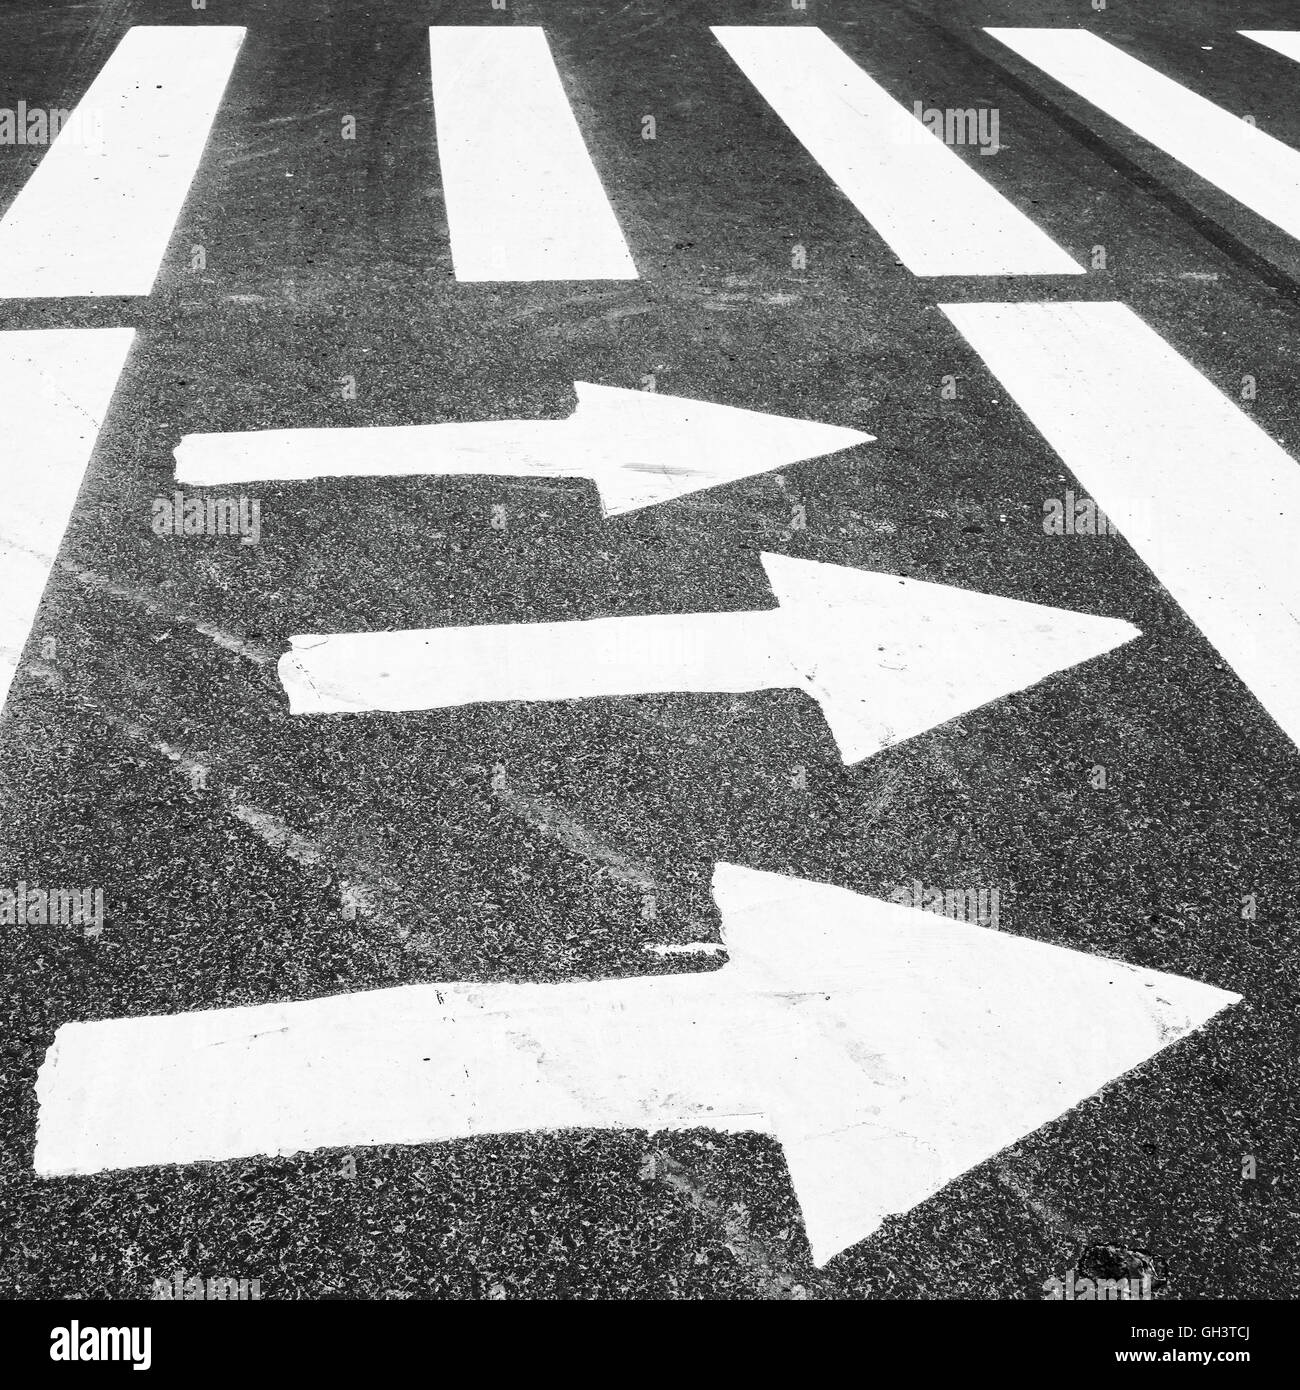 Zebra, cruce peatonal con señalización de carreteras. Las flechas de color blanco y rectángulos en el asfalto oscuro Foto de stock